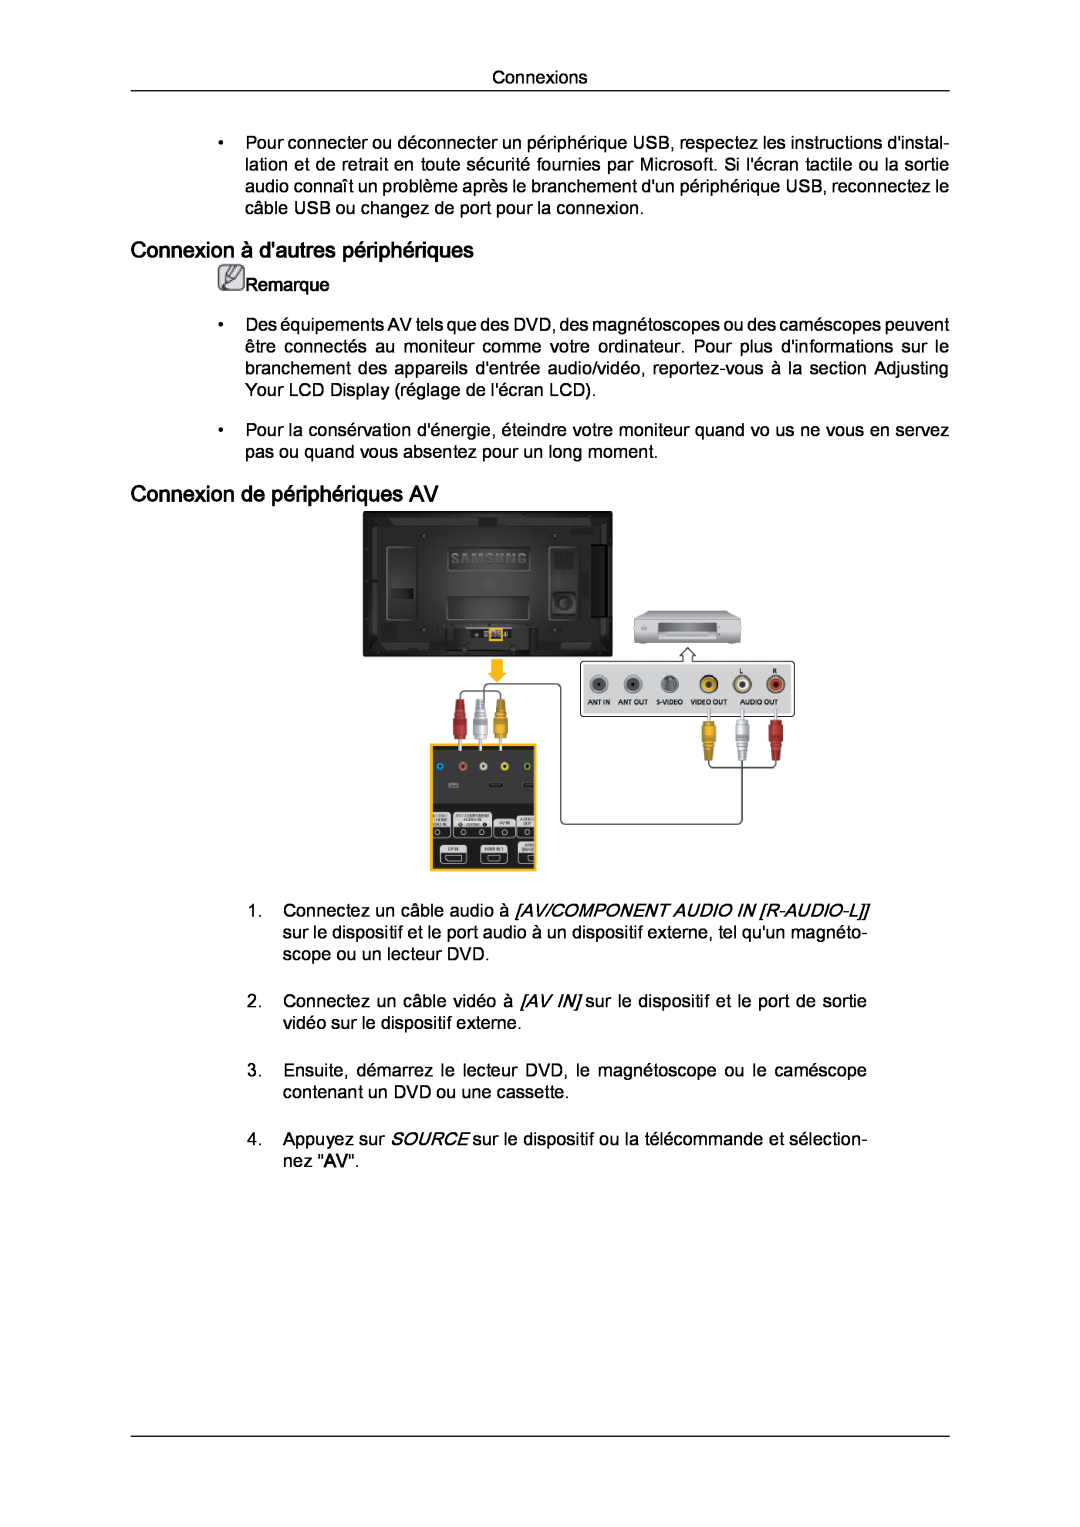 Samsung LH46CRPMBC/EN, LH46CRPMBD/EN manual Connexion à dautres périphériques, Connexion de périphériques AV, Remarque 